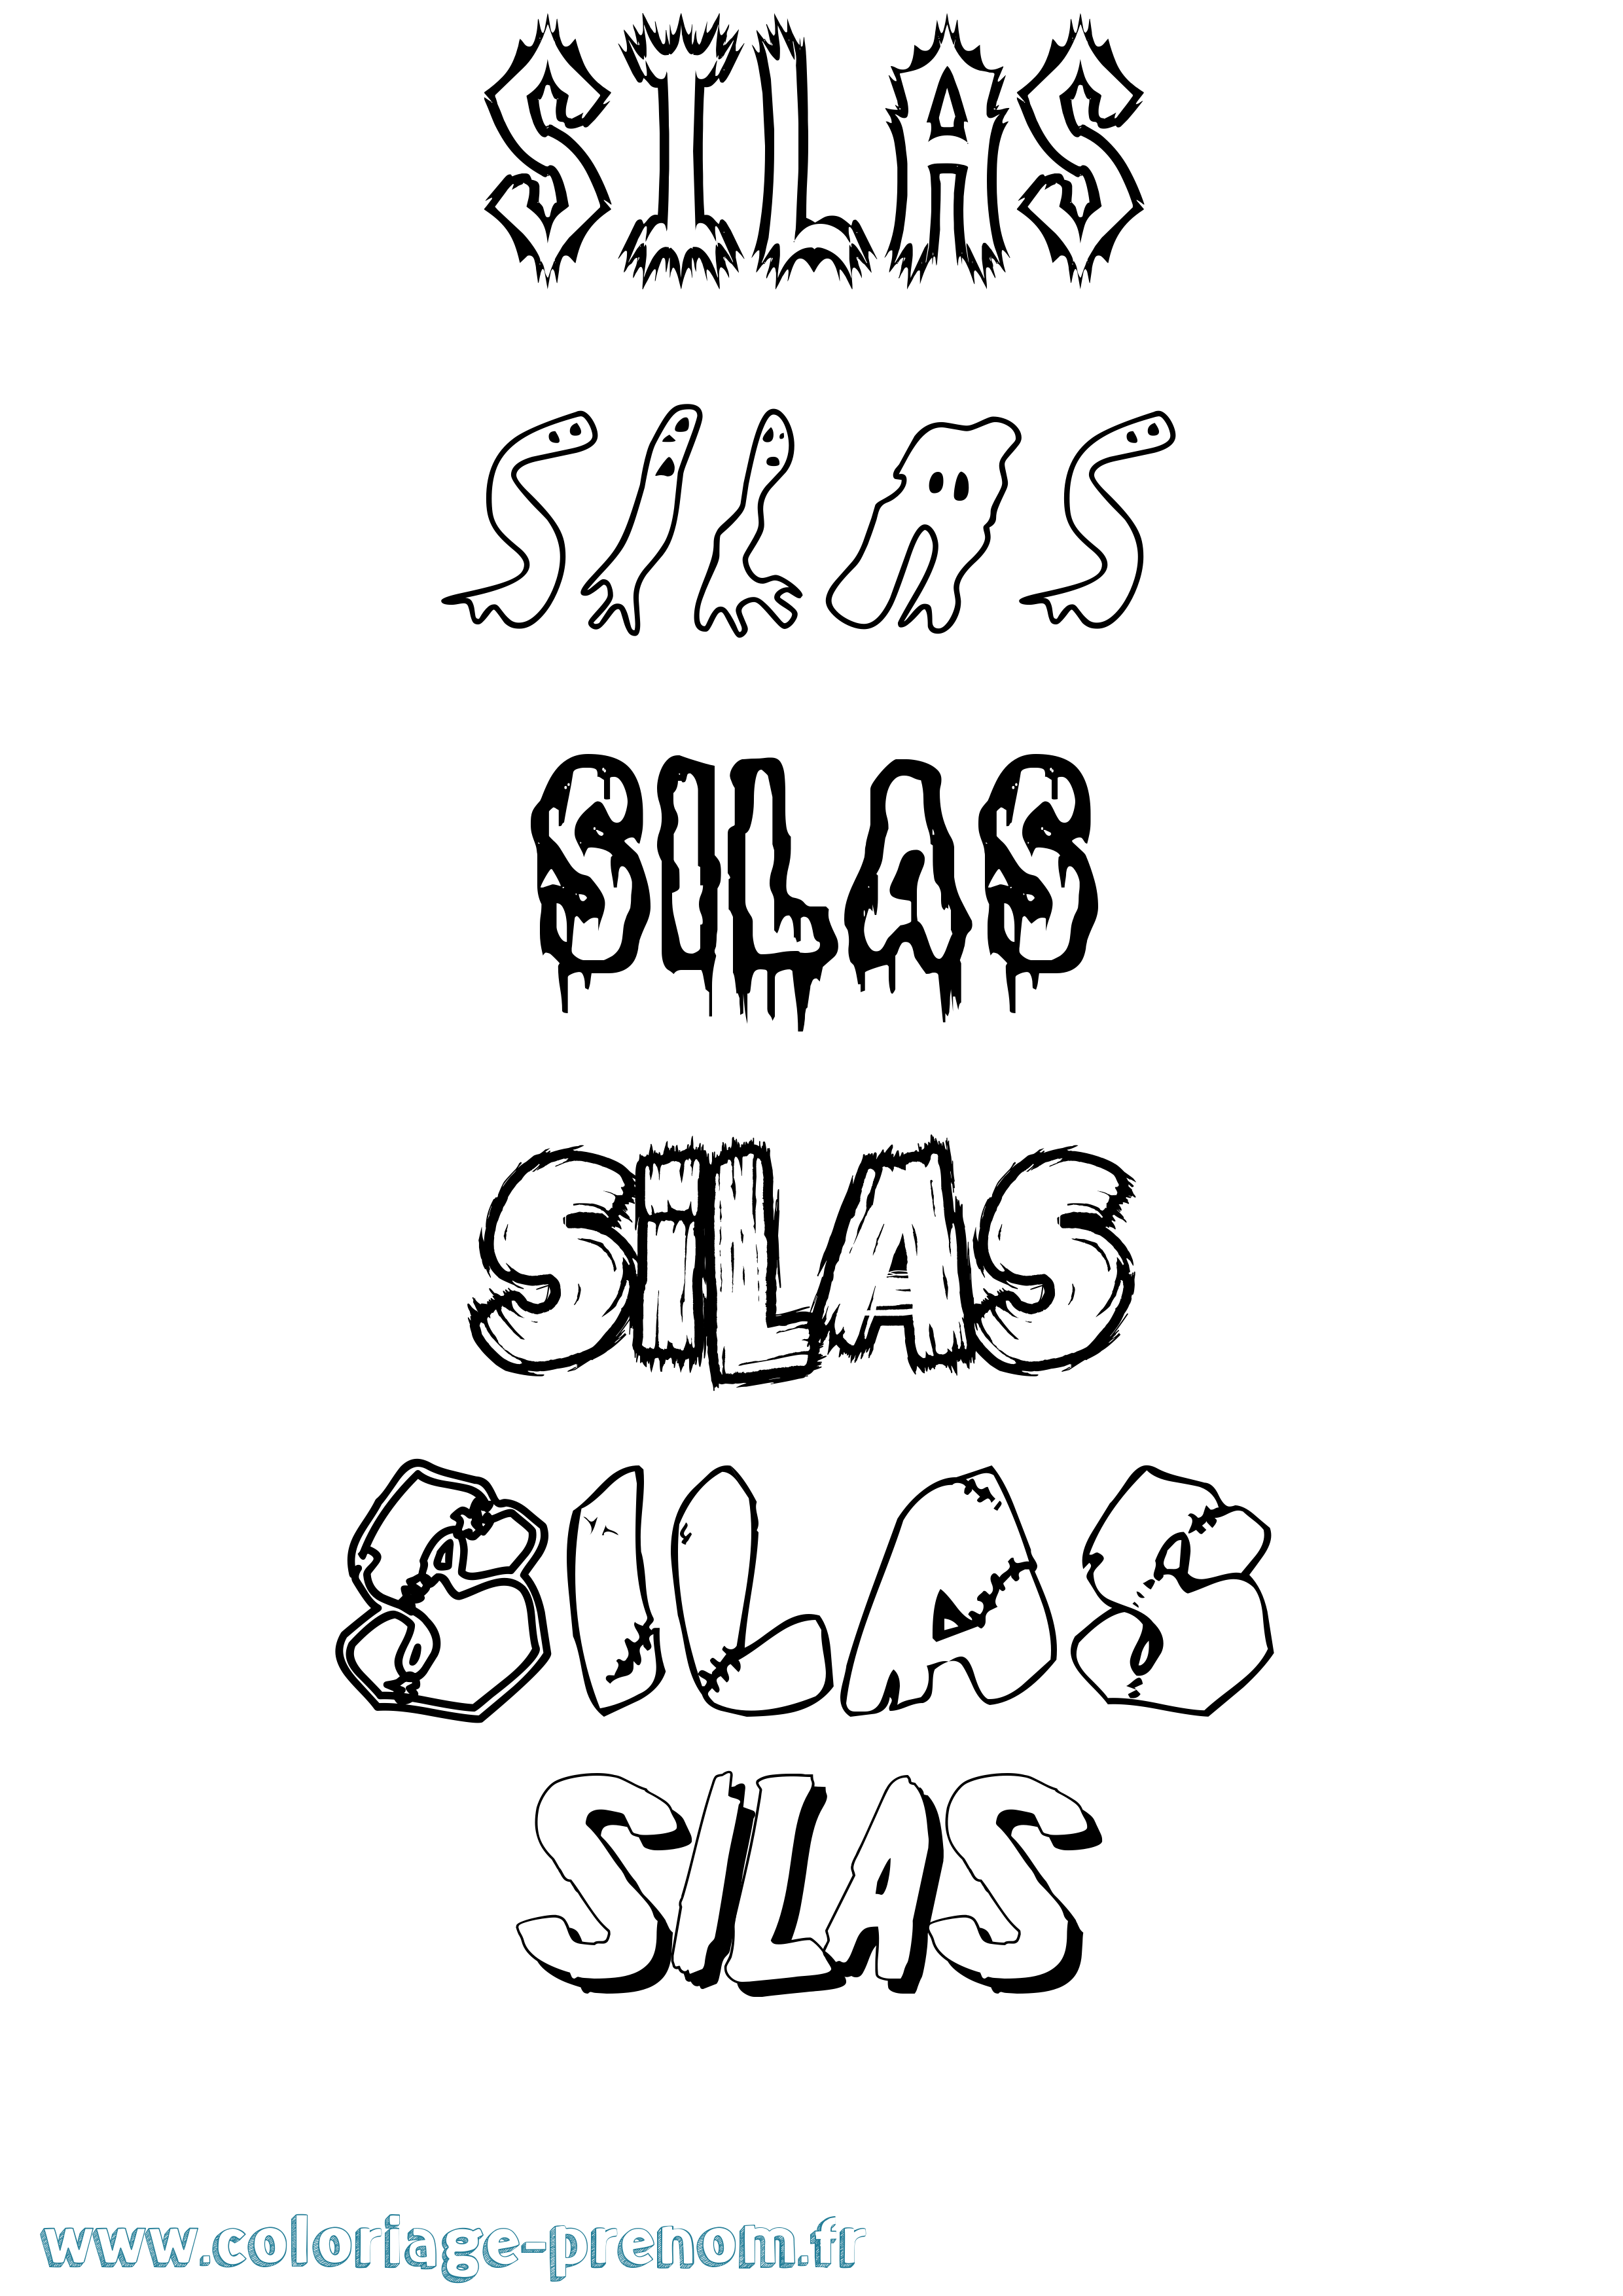 Coloriage prénom Silas